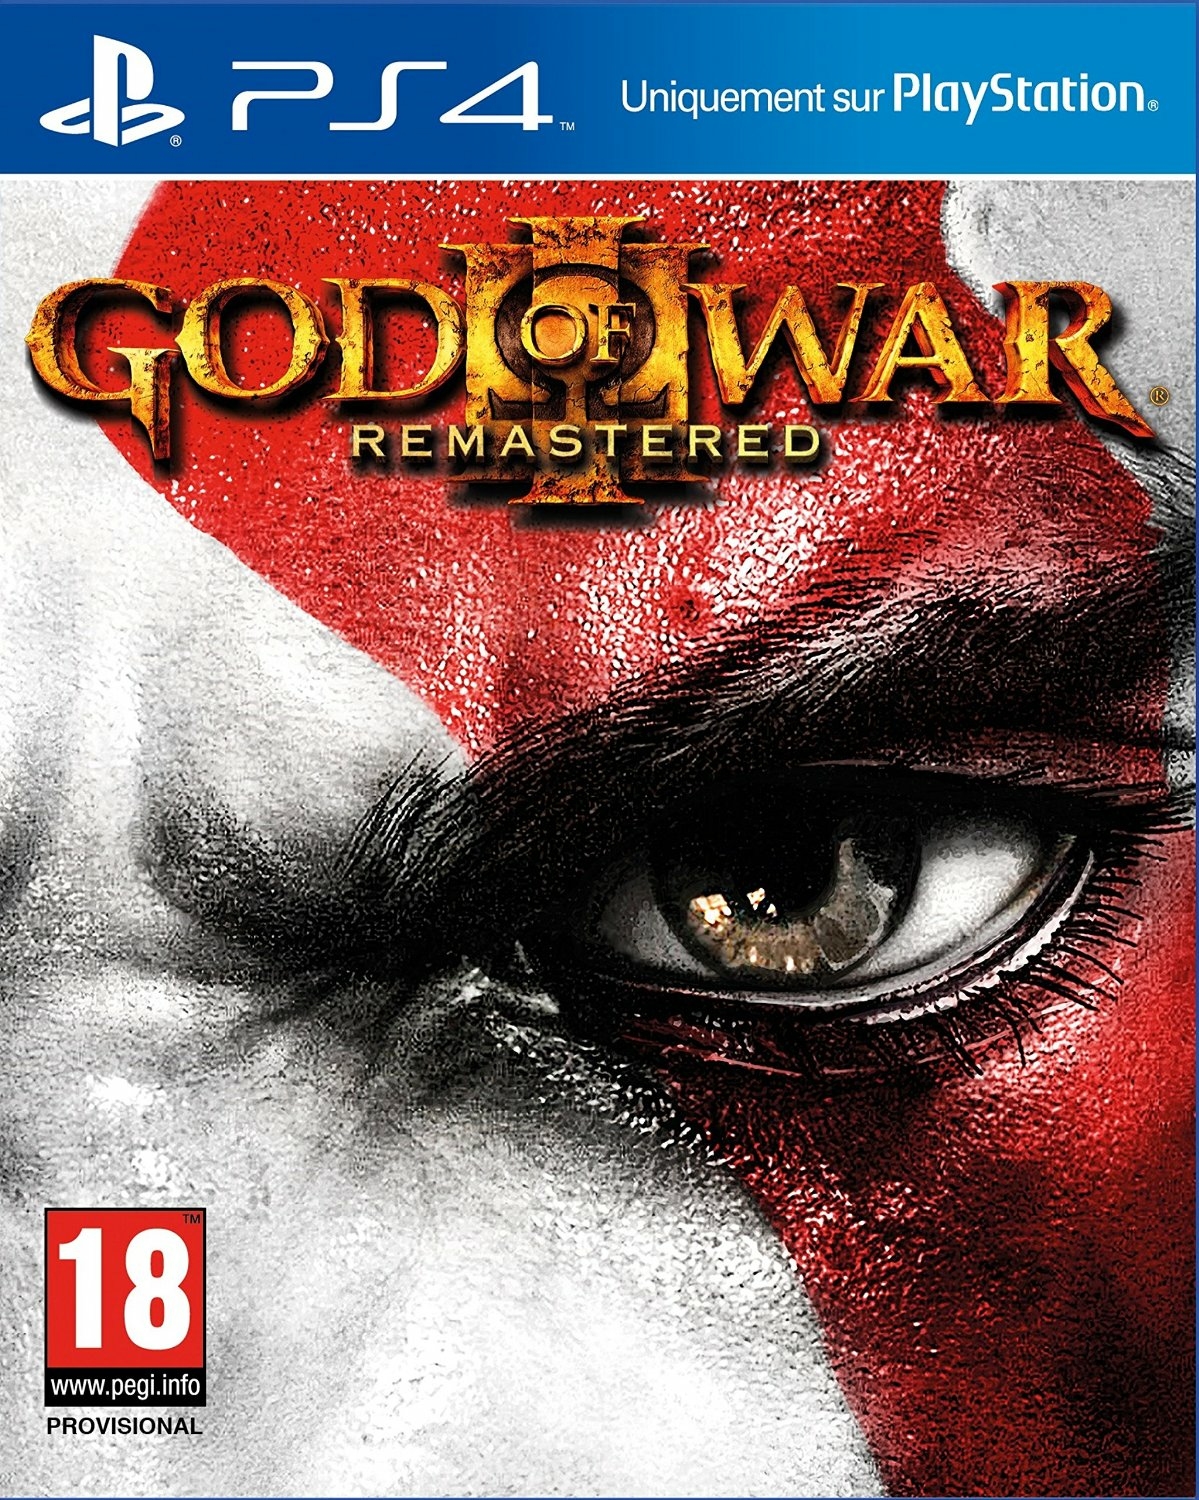 download god of war 3 remastered